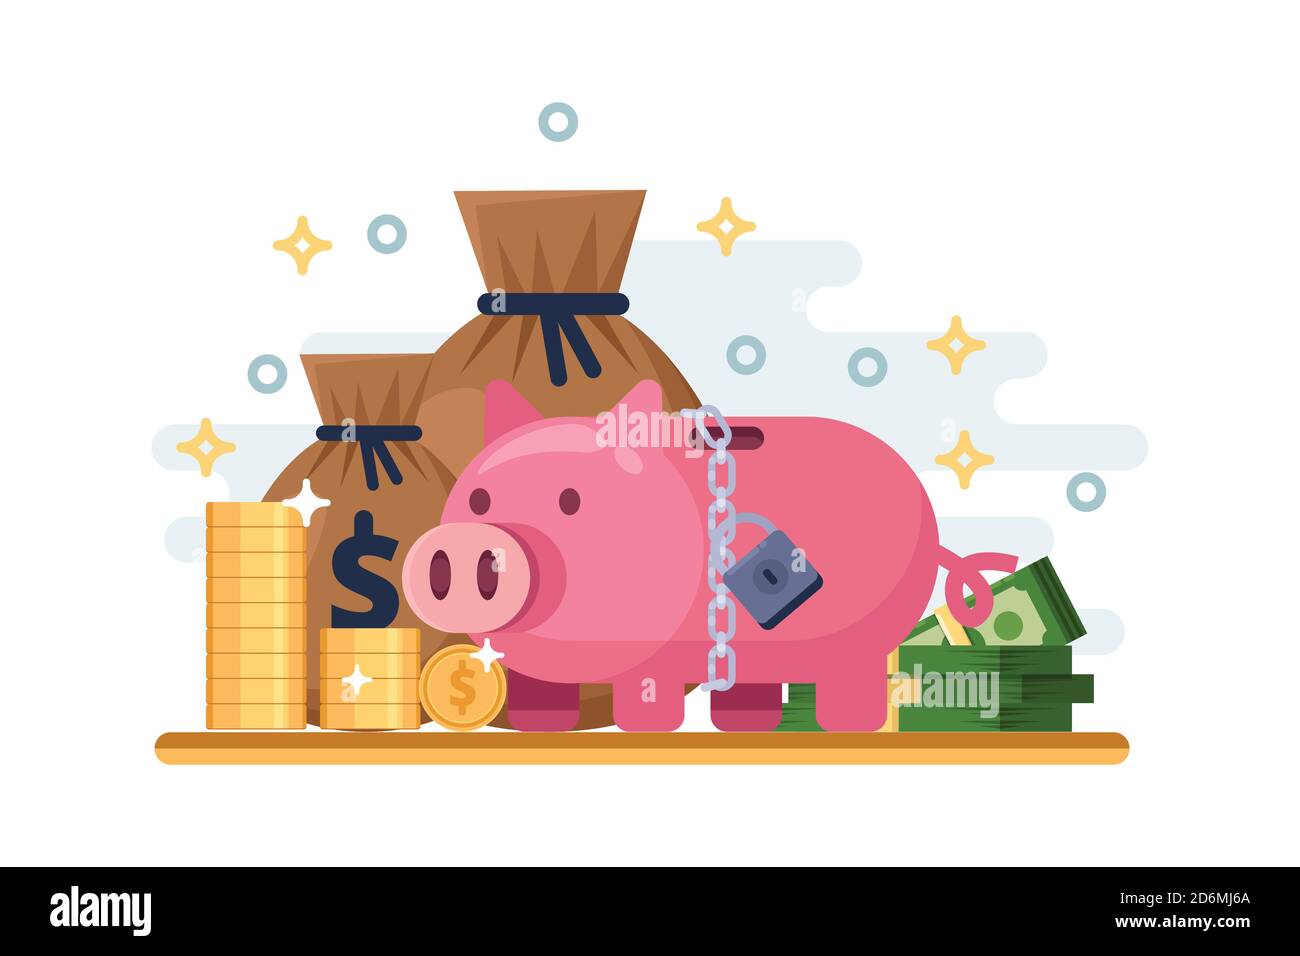 Einsparung und Schutz Geldeinlage. Vektor flache Abbildung von Sparschwein mit Vorhängeschloss. Konzept der finanziellen Sicherheit. Stock Vektor